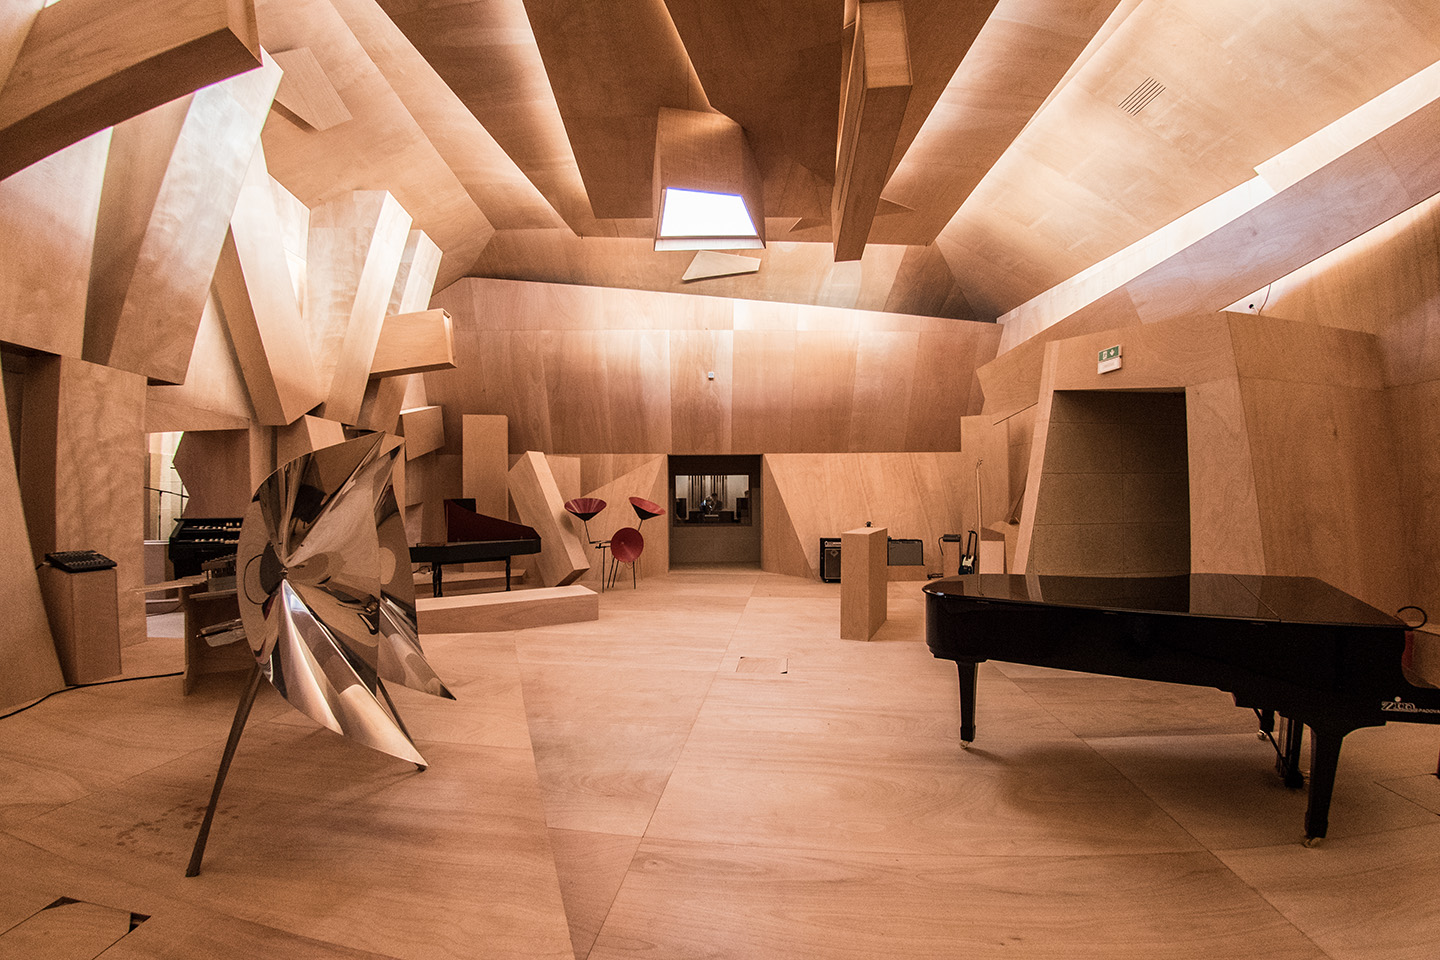 Studio Venezia (Французский павильон на 57-ой Венецианской биеннале), 2017. Ксавье Вейан (Xavier Veilhan) - современный французский скульптор. Современное искусство Франции